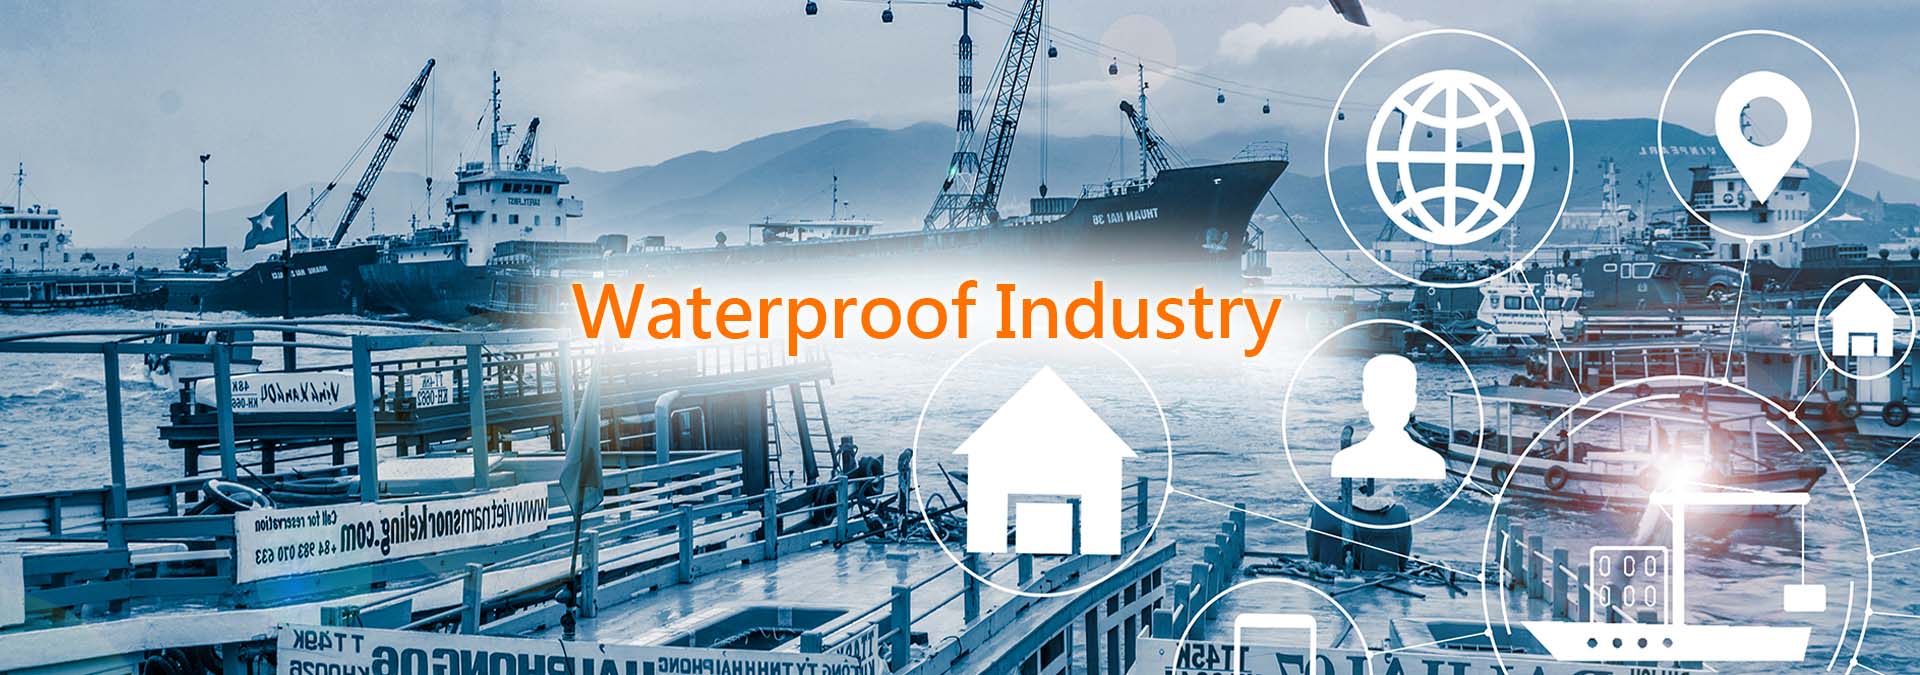 Waterproof industry